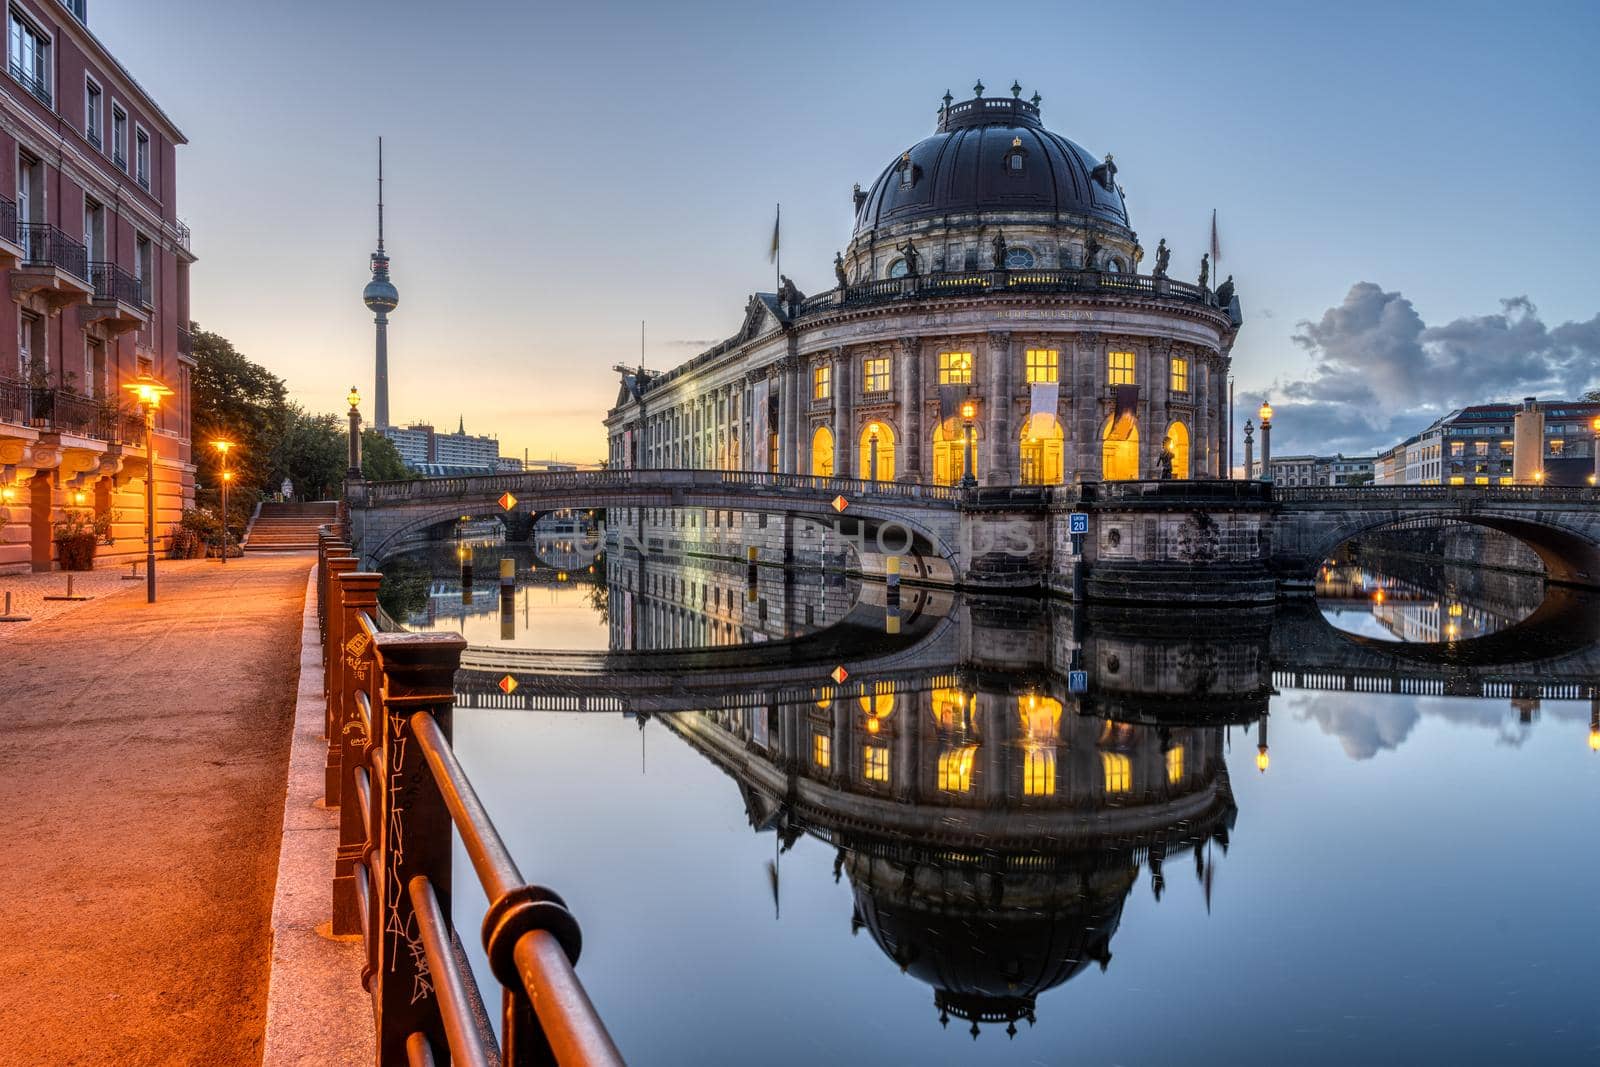 The river Spree in Berlin before sunrise by elxeneize